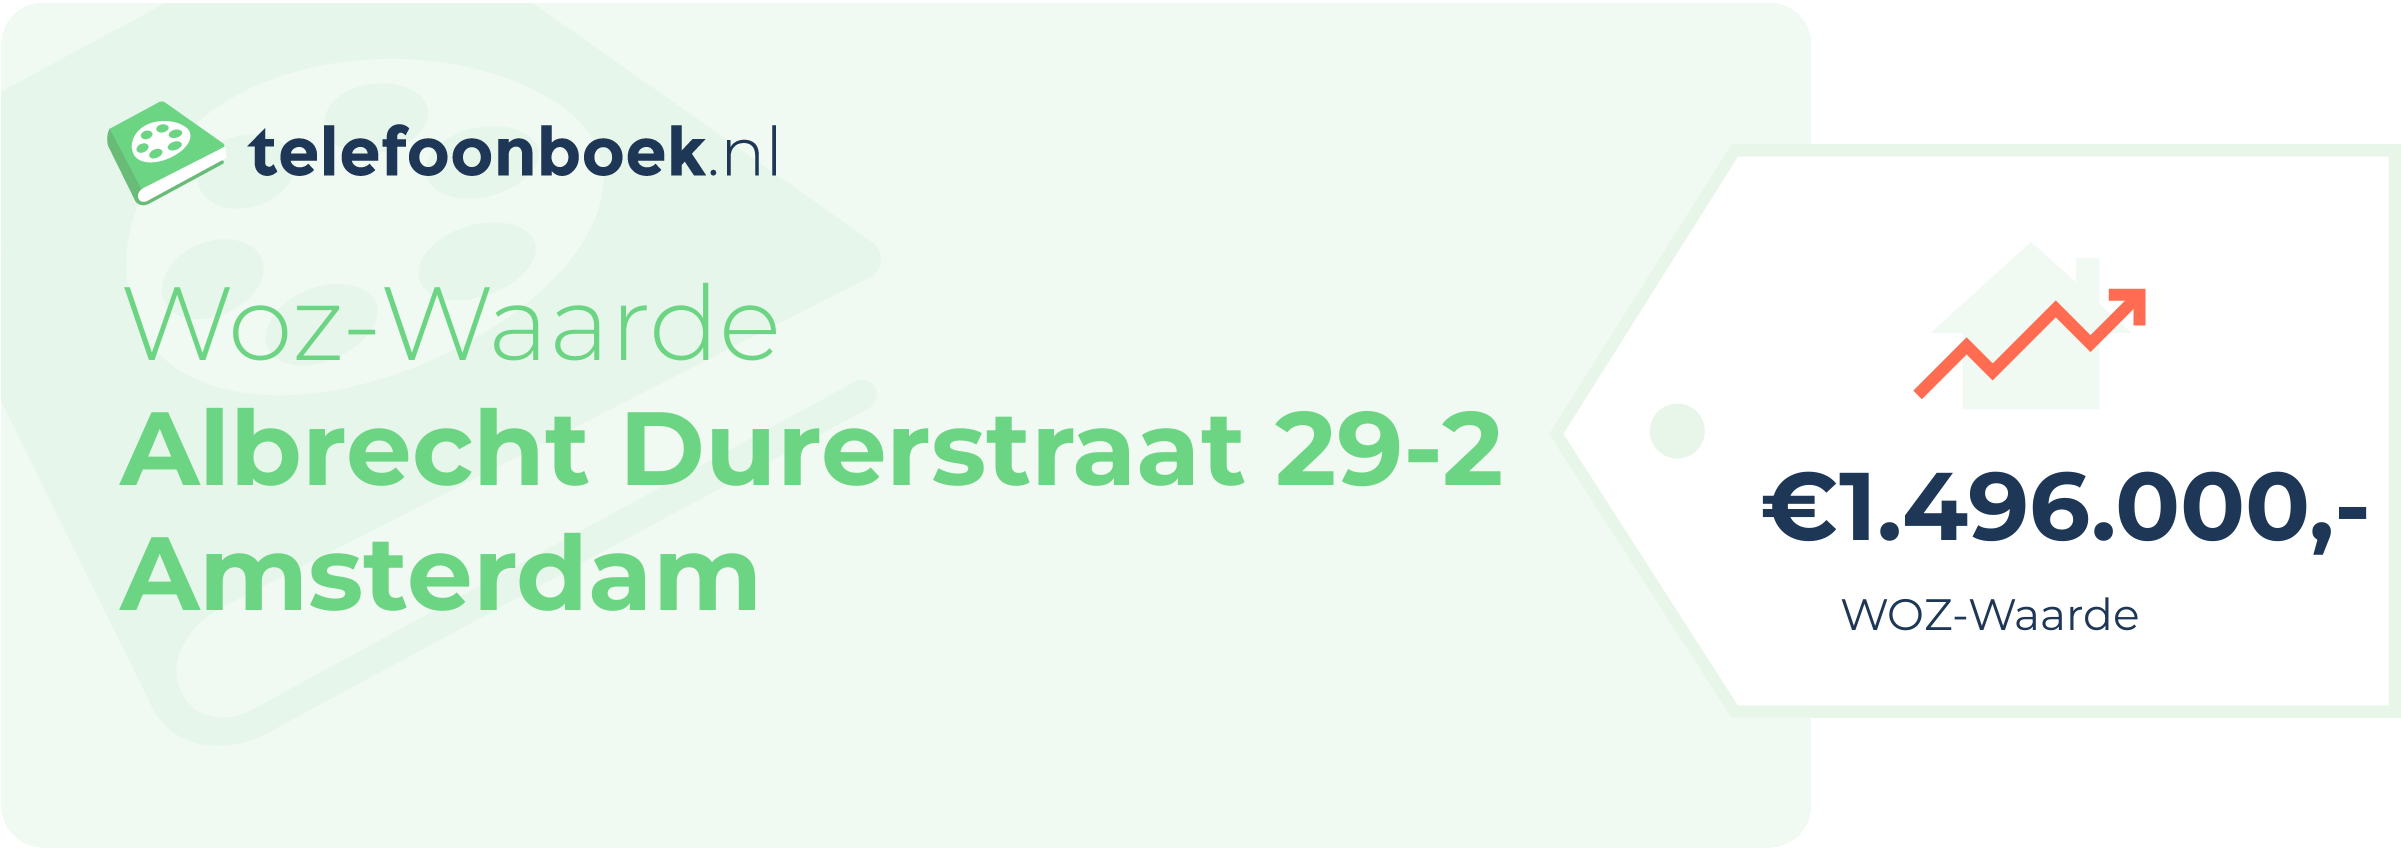 WOZ-waarde Albrecht Durerstraat 29-2 Amsterdam